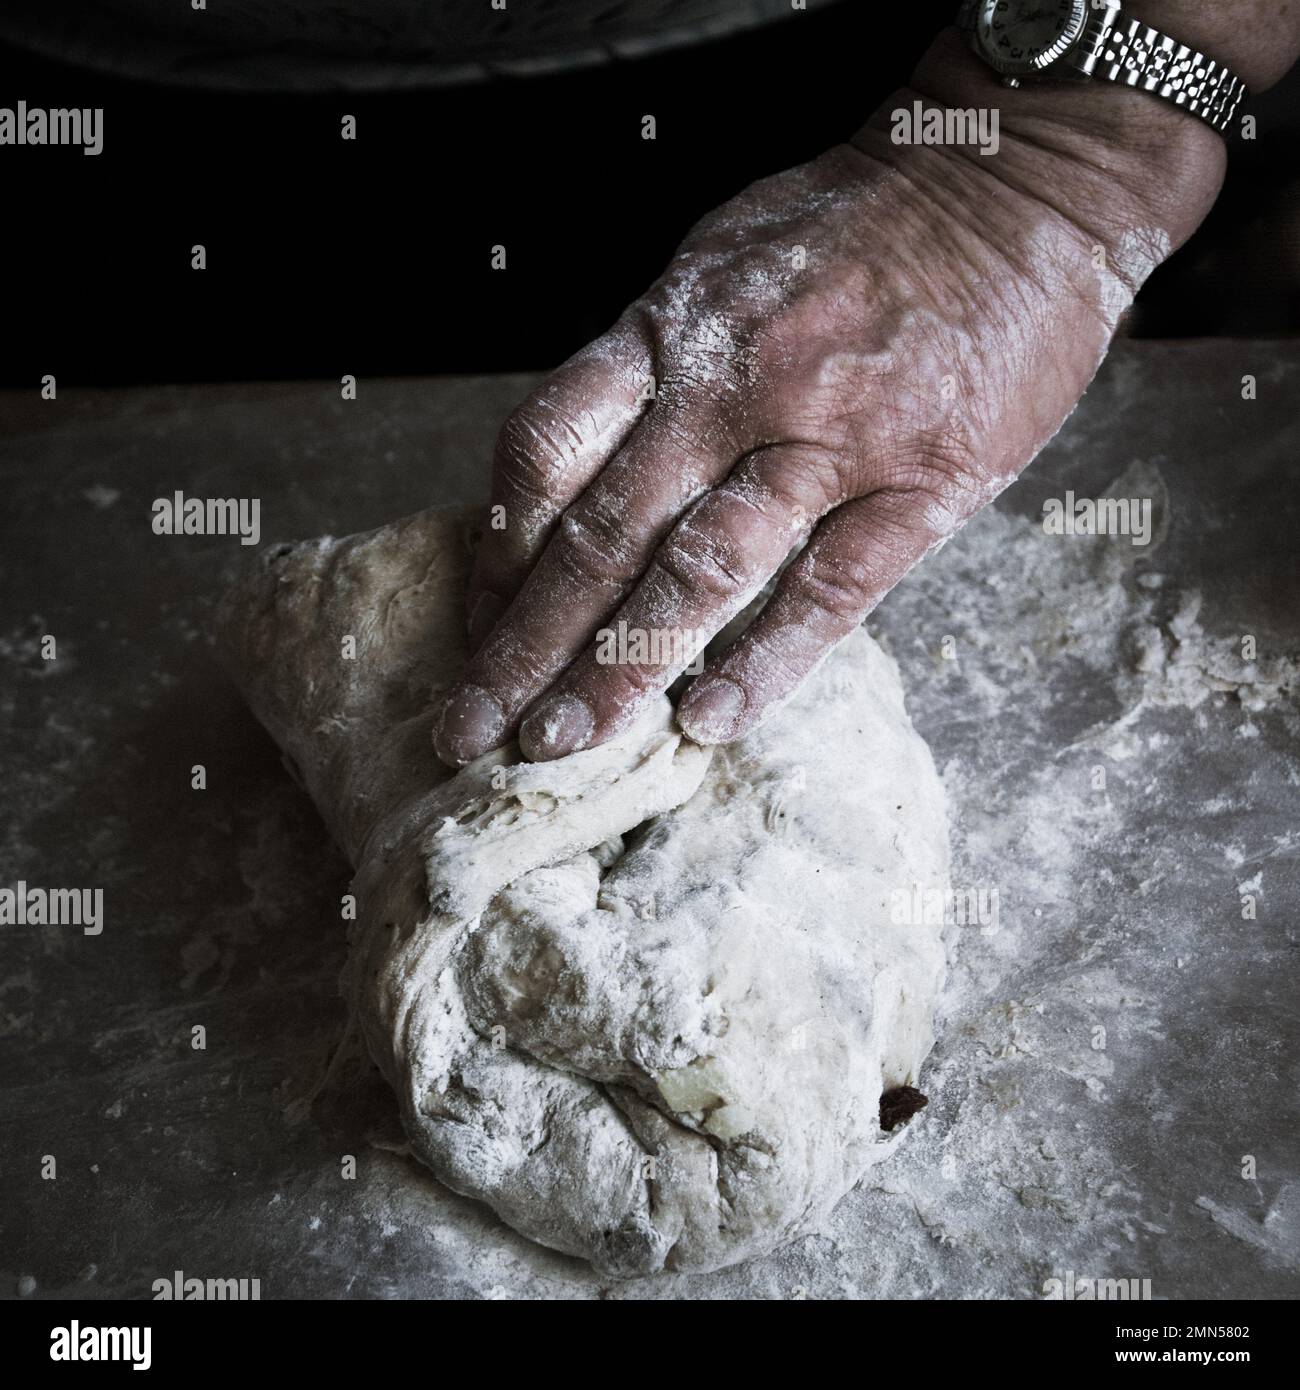 Le mani della nonna della donna impastano la pasta del pane su una superficie infarinata Foto Stock